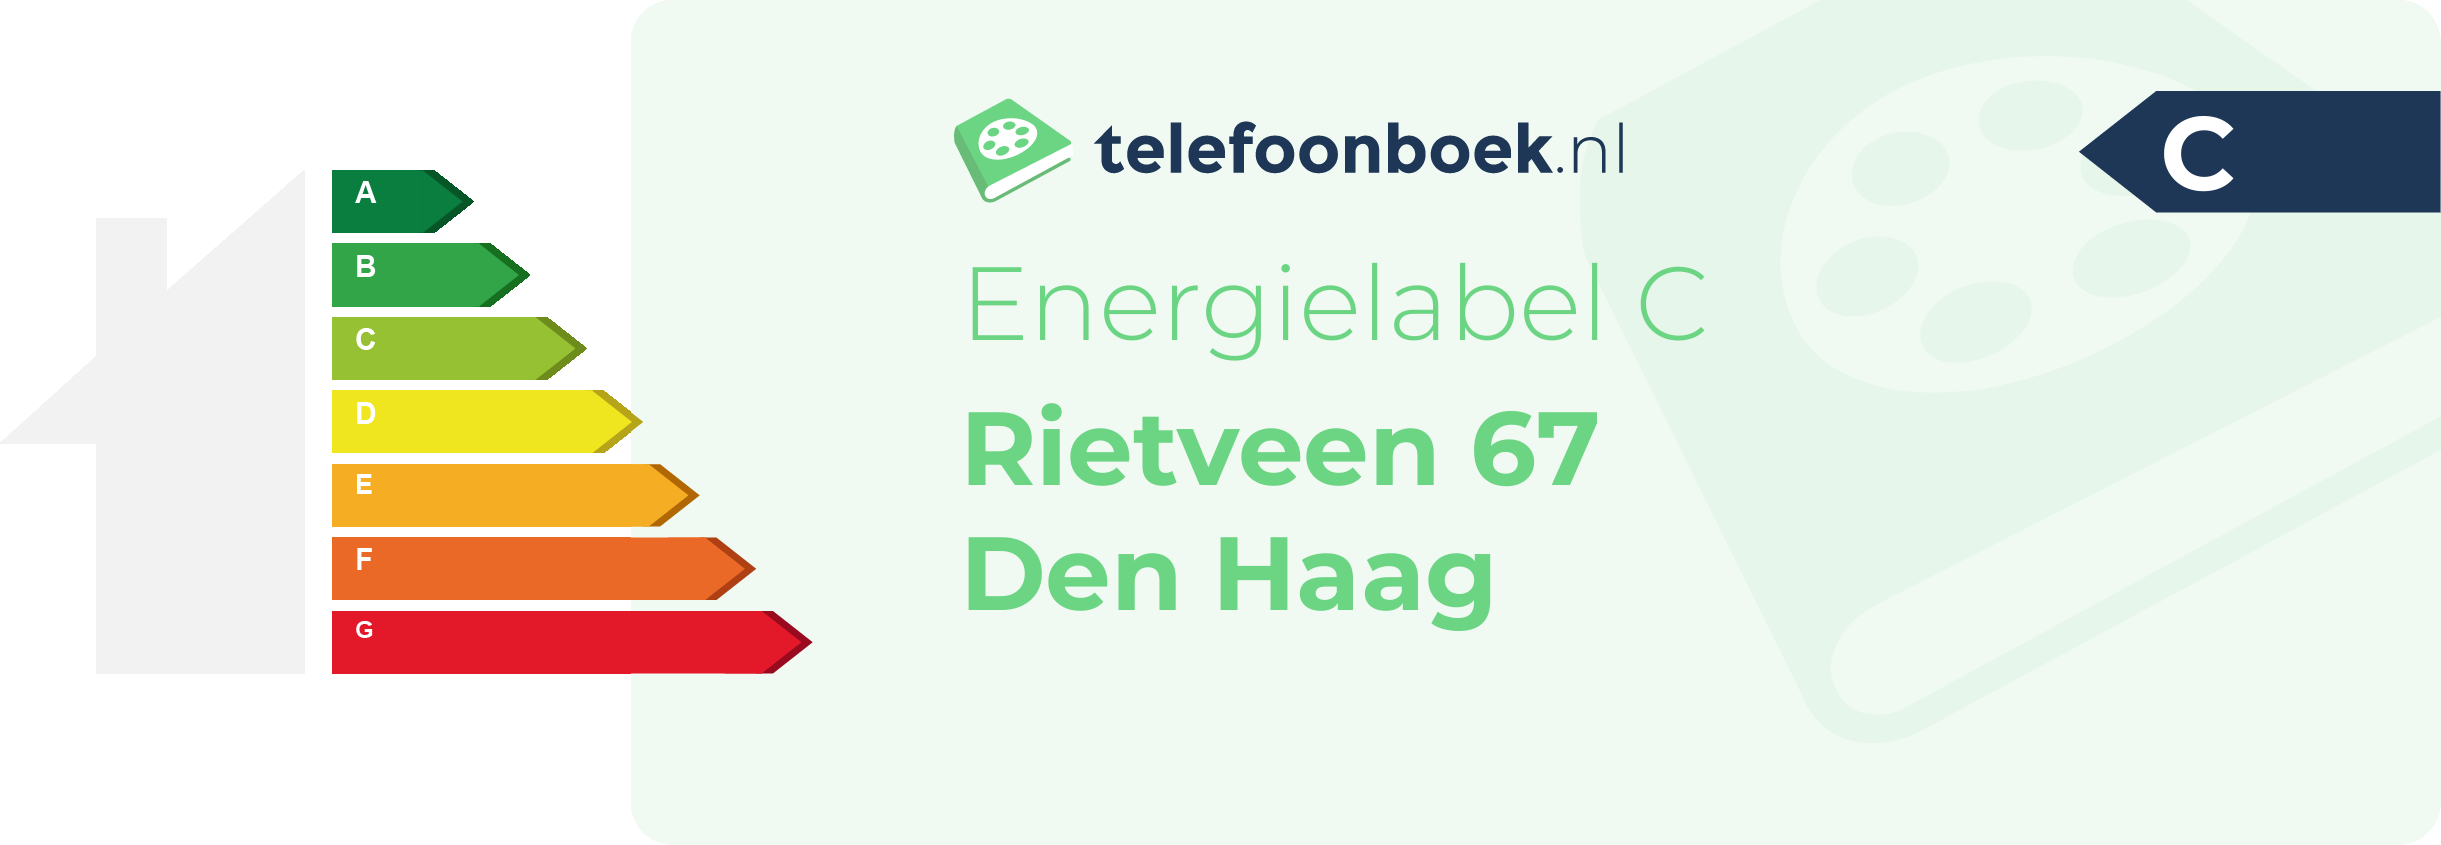 Energielabel Rietveen 67 Den Haag